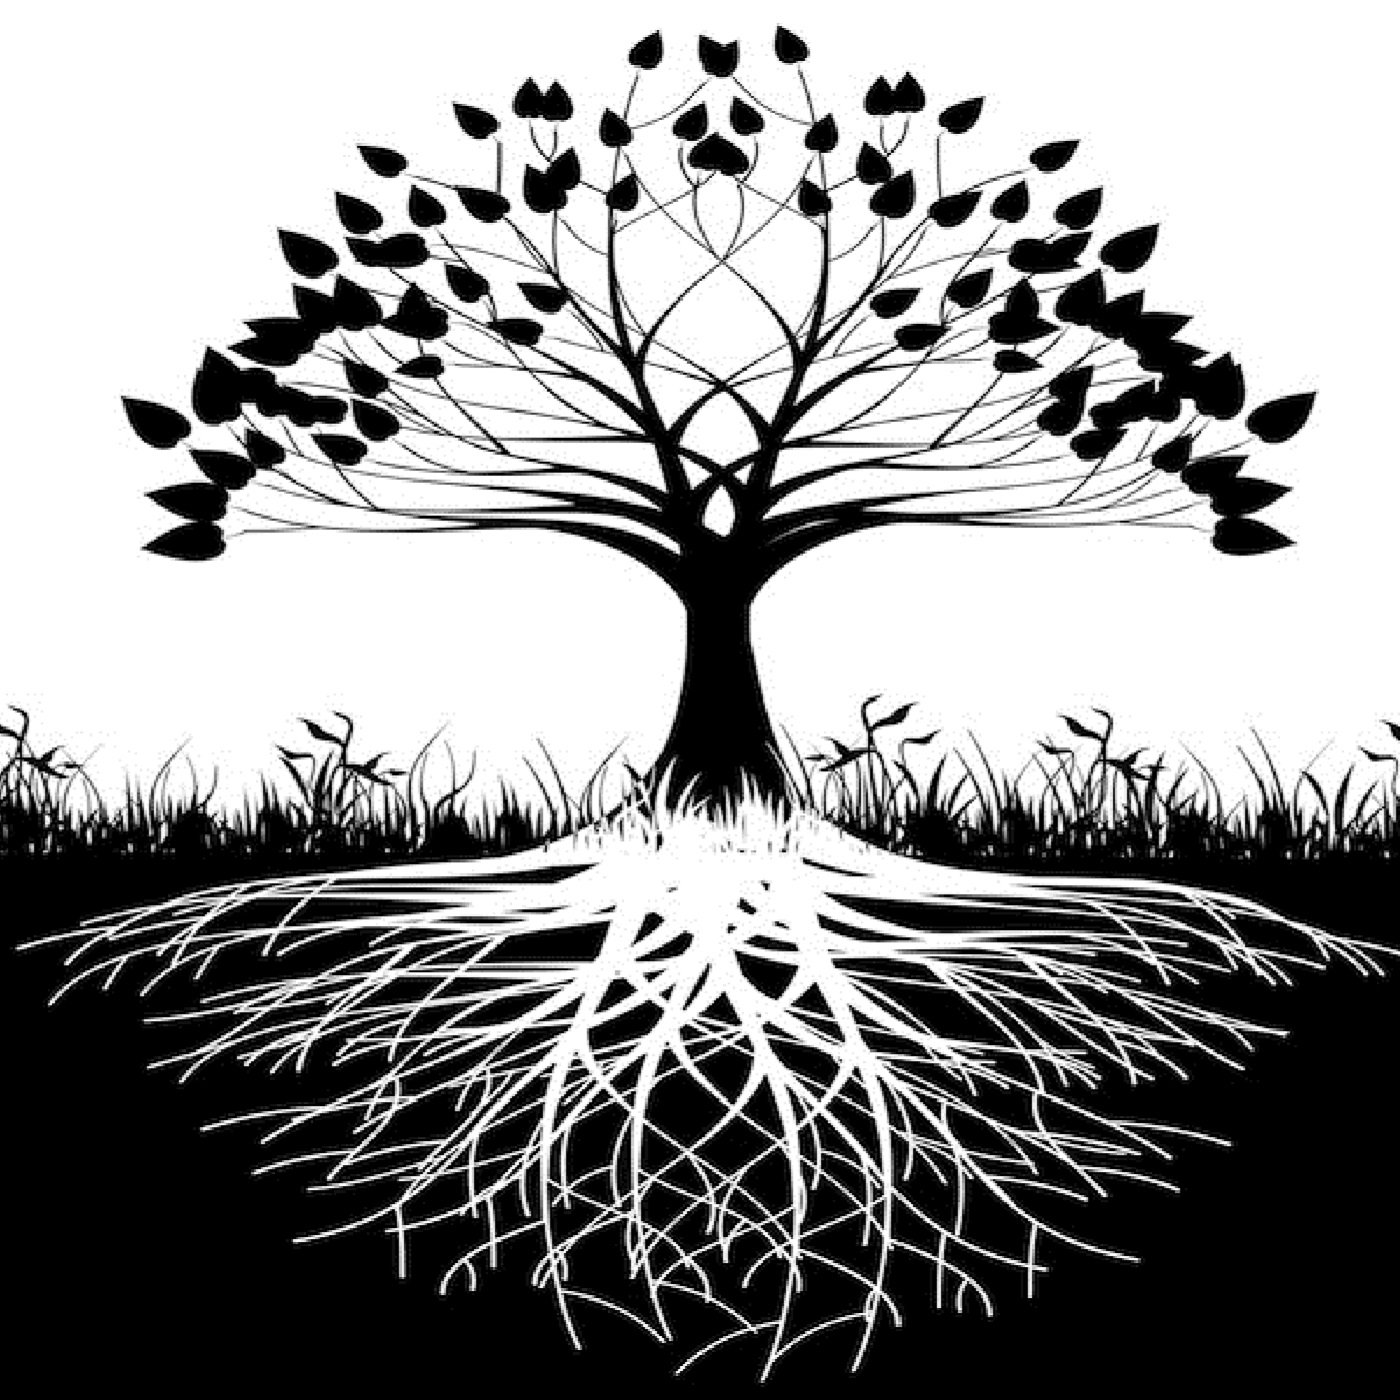 Тень древа. "Tree of Life" ("дерево жизни") by degree. Силуэт дерева. Дерево эскиз. Дерево с корнями силуэт.